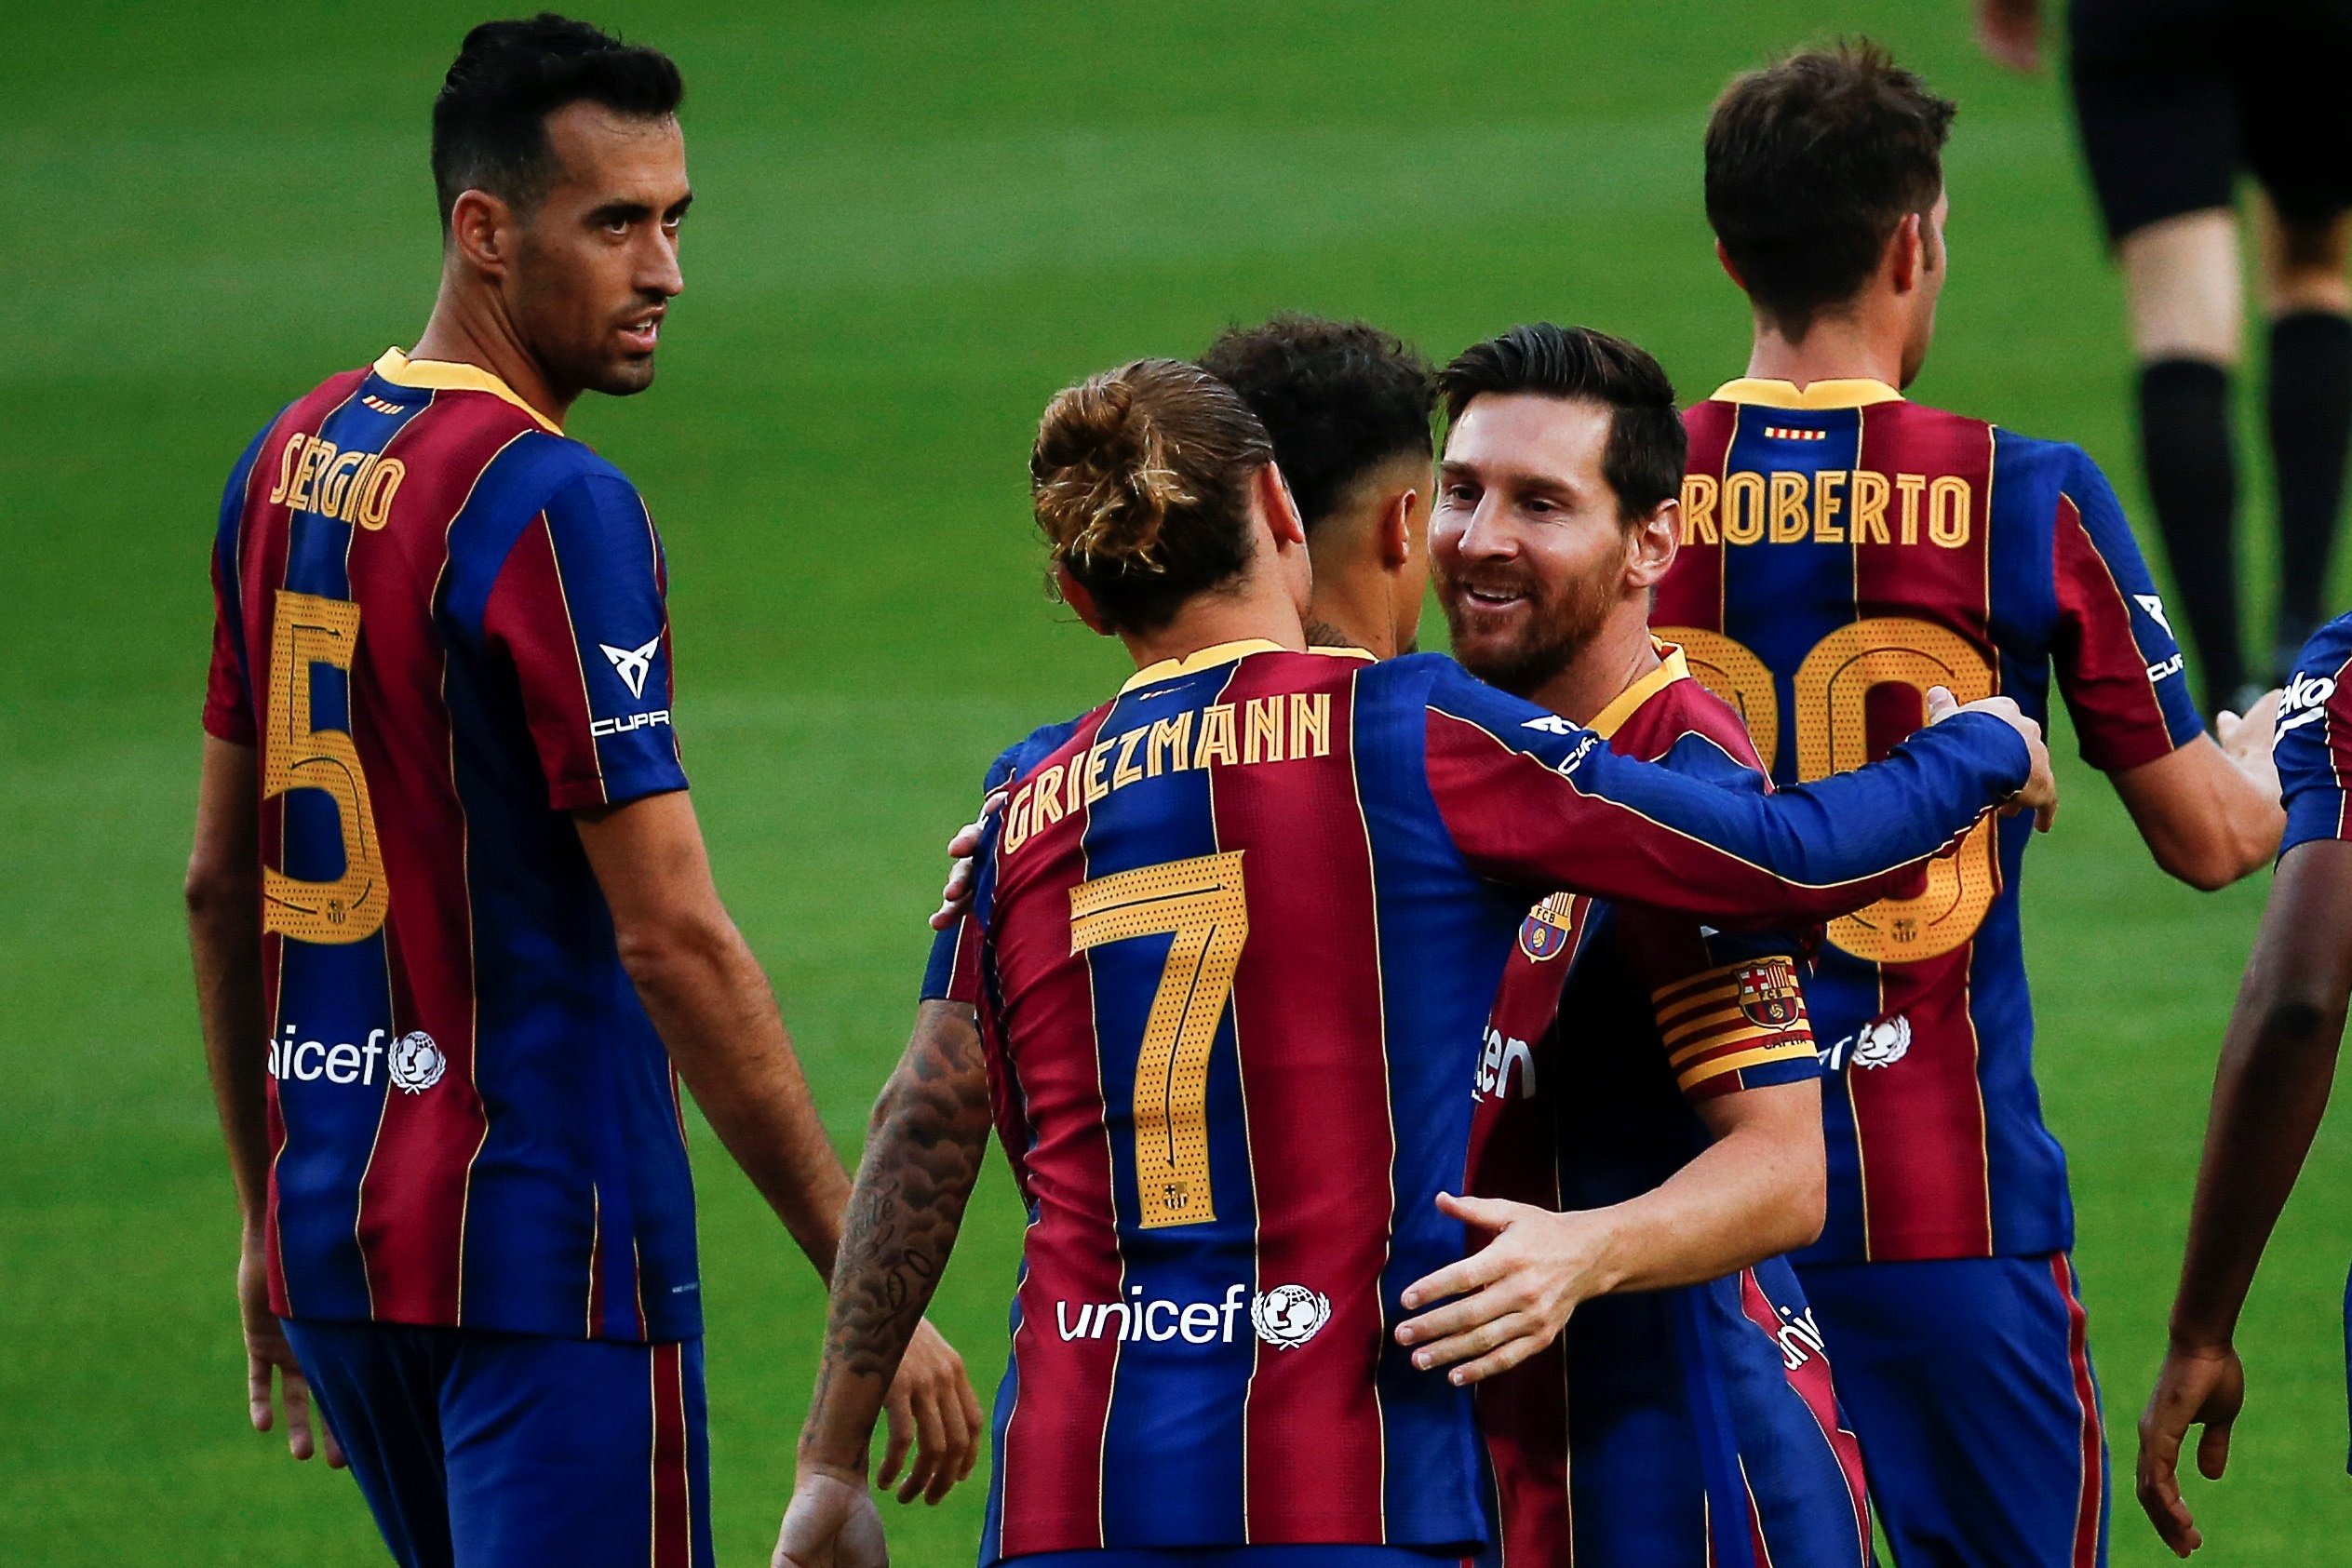 Estripada de l'exagent de Griezmann contra Messi: "És un règim de terror"